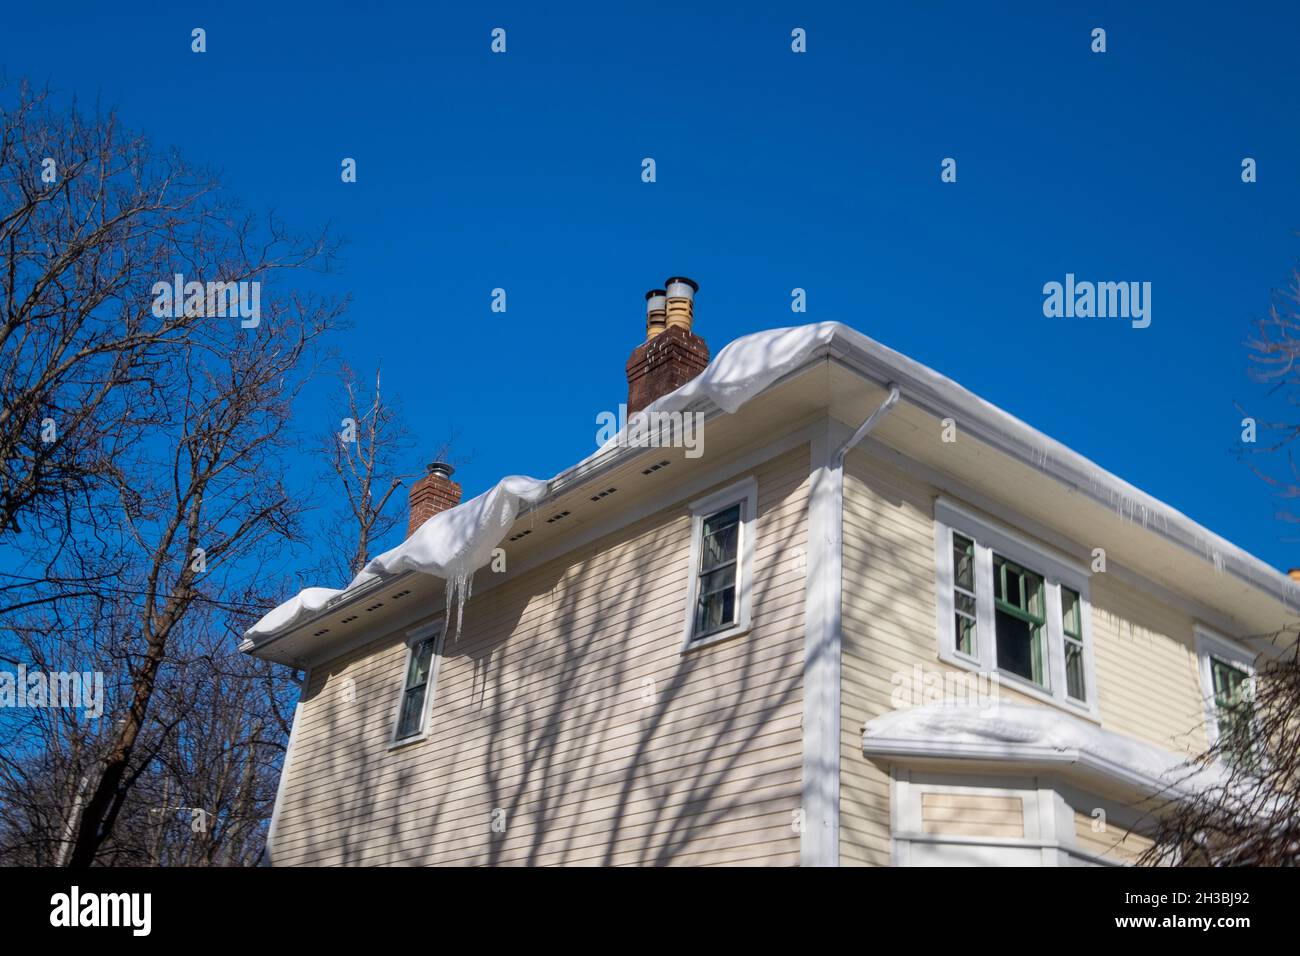 L'angolo esterno di una casa di legno giallo con finestre, un camino, e finiture bianche. C'è neve sul tetto dell'edificio sospeso sopra la vigilia Foto Stock